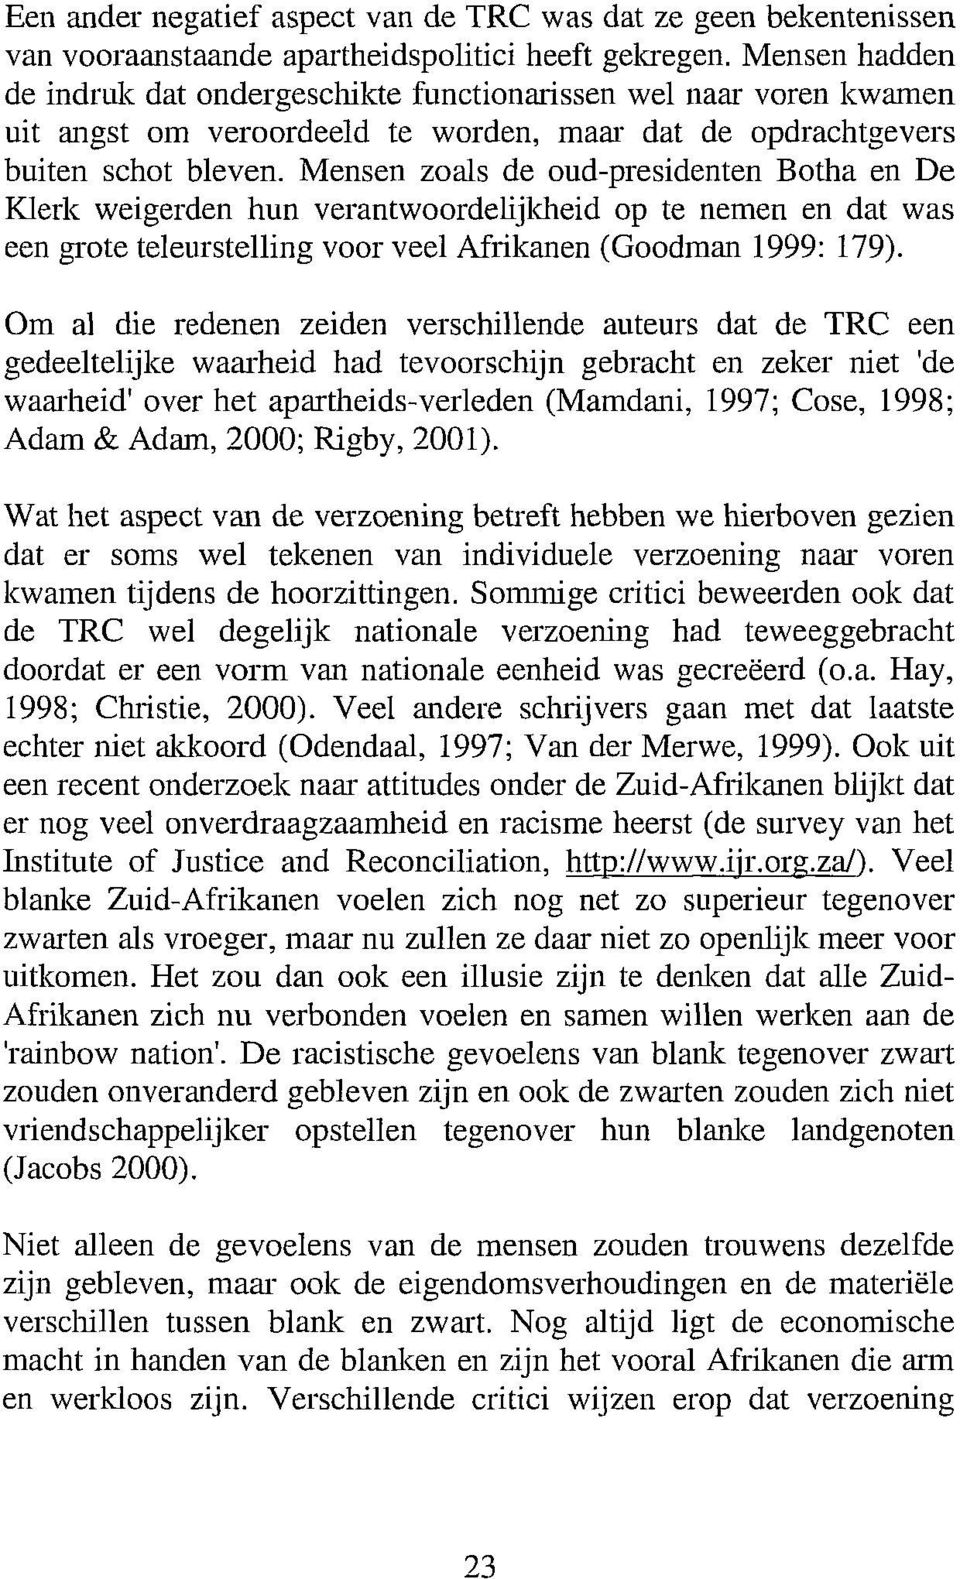 Mensen zoals de oud-presidenten Botha en De Klerk weigerden hun verantwoordelijkheid op te nemen en dat was een grote teleurstelling voor veel Afrikanen (Goodman 1999: 179).